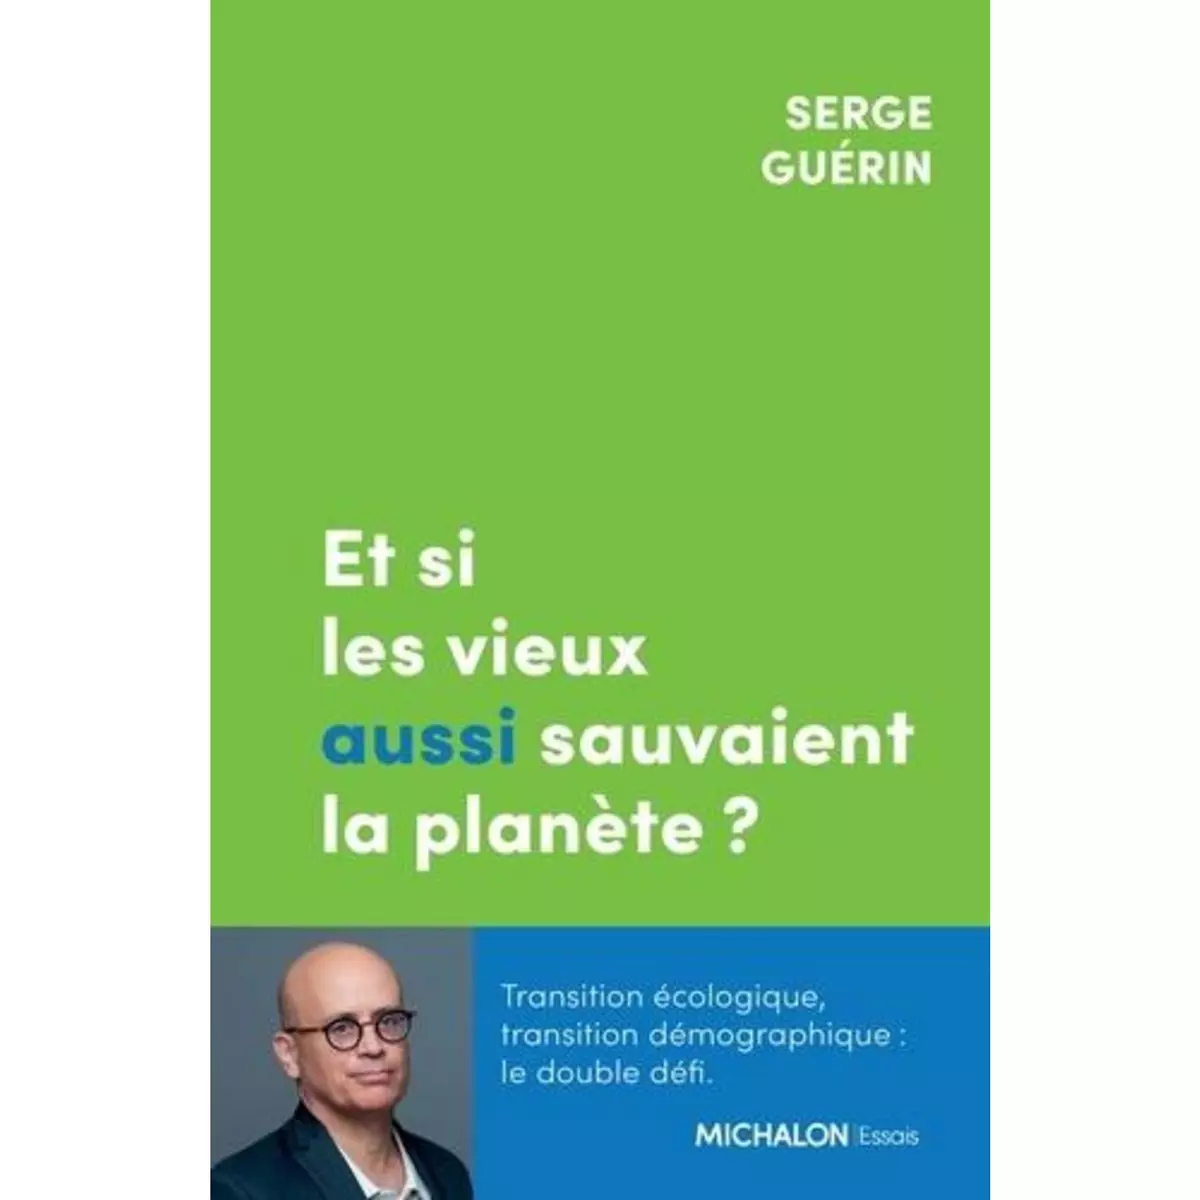  ET SI LES VIEUX AUSSI SAUVAIENT LA PLANETE ?, Guérin Serge